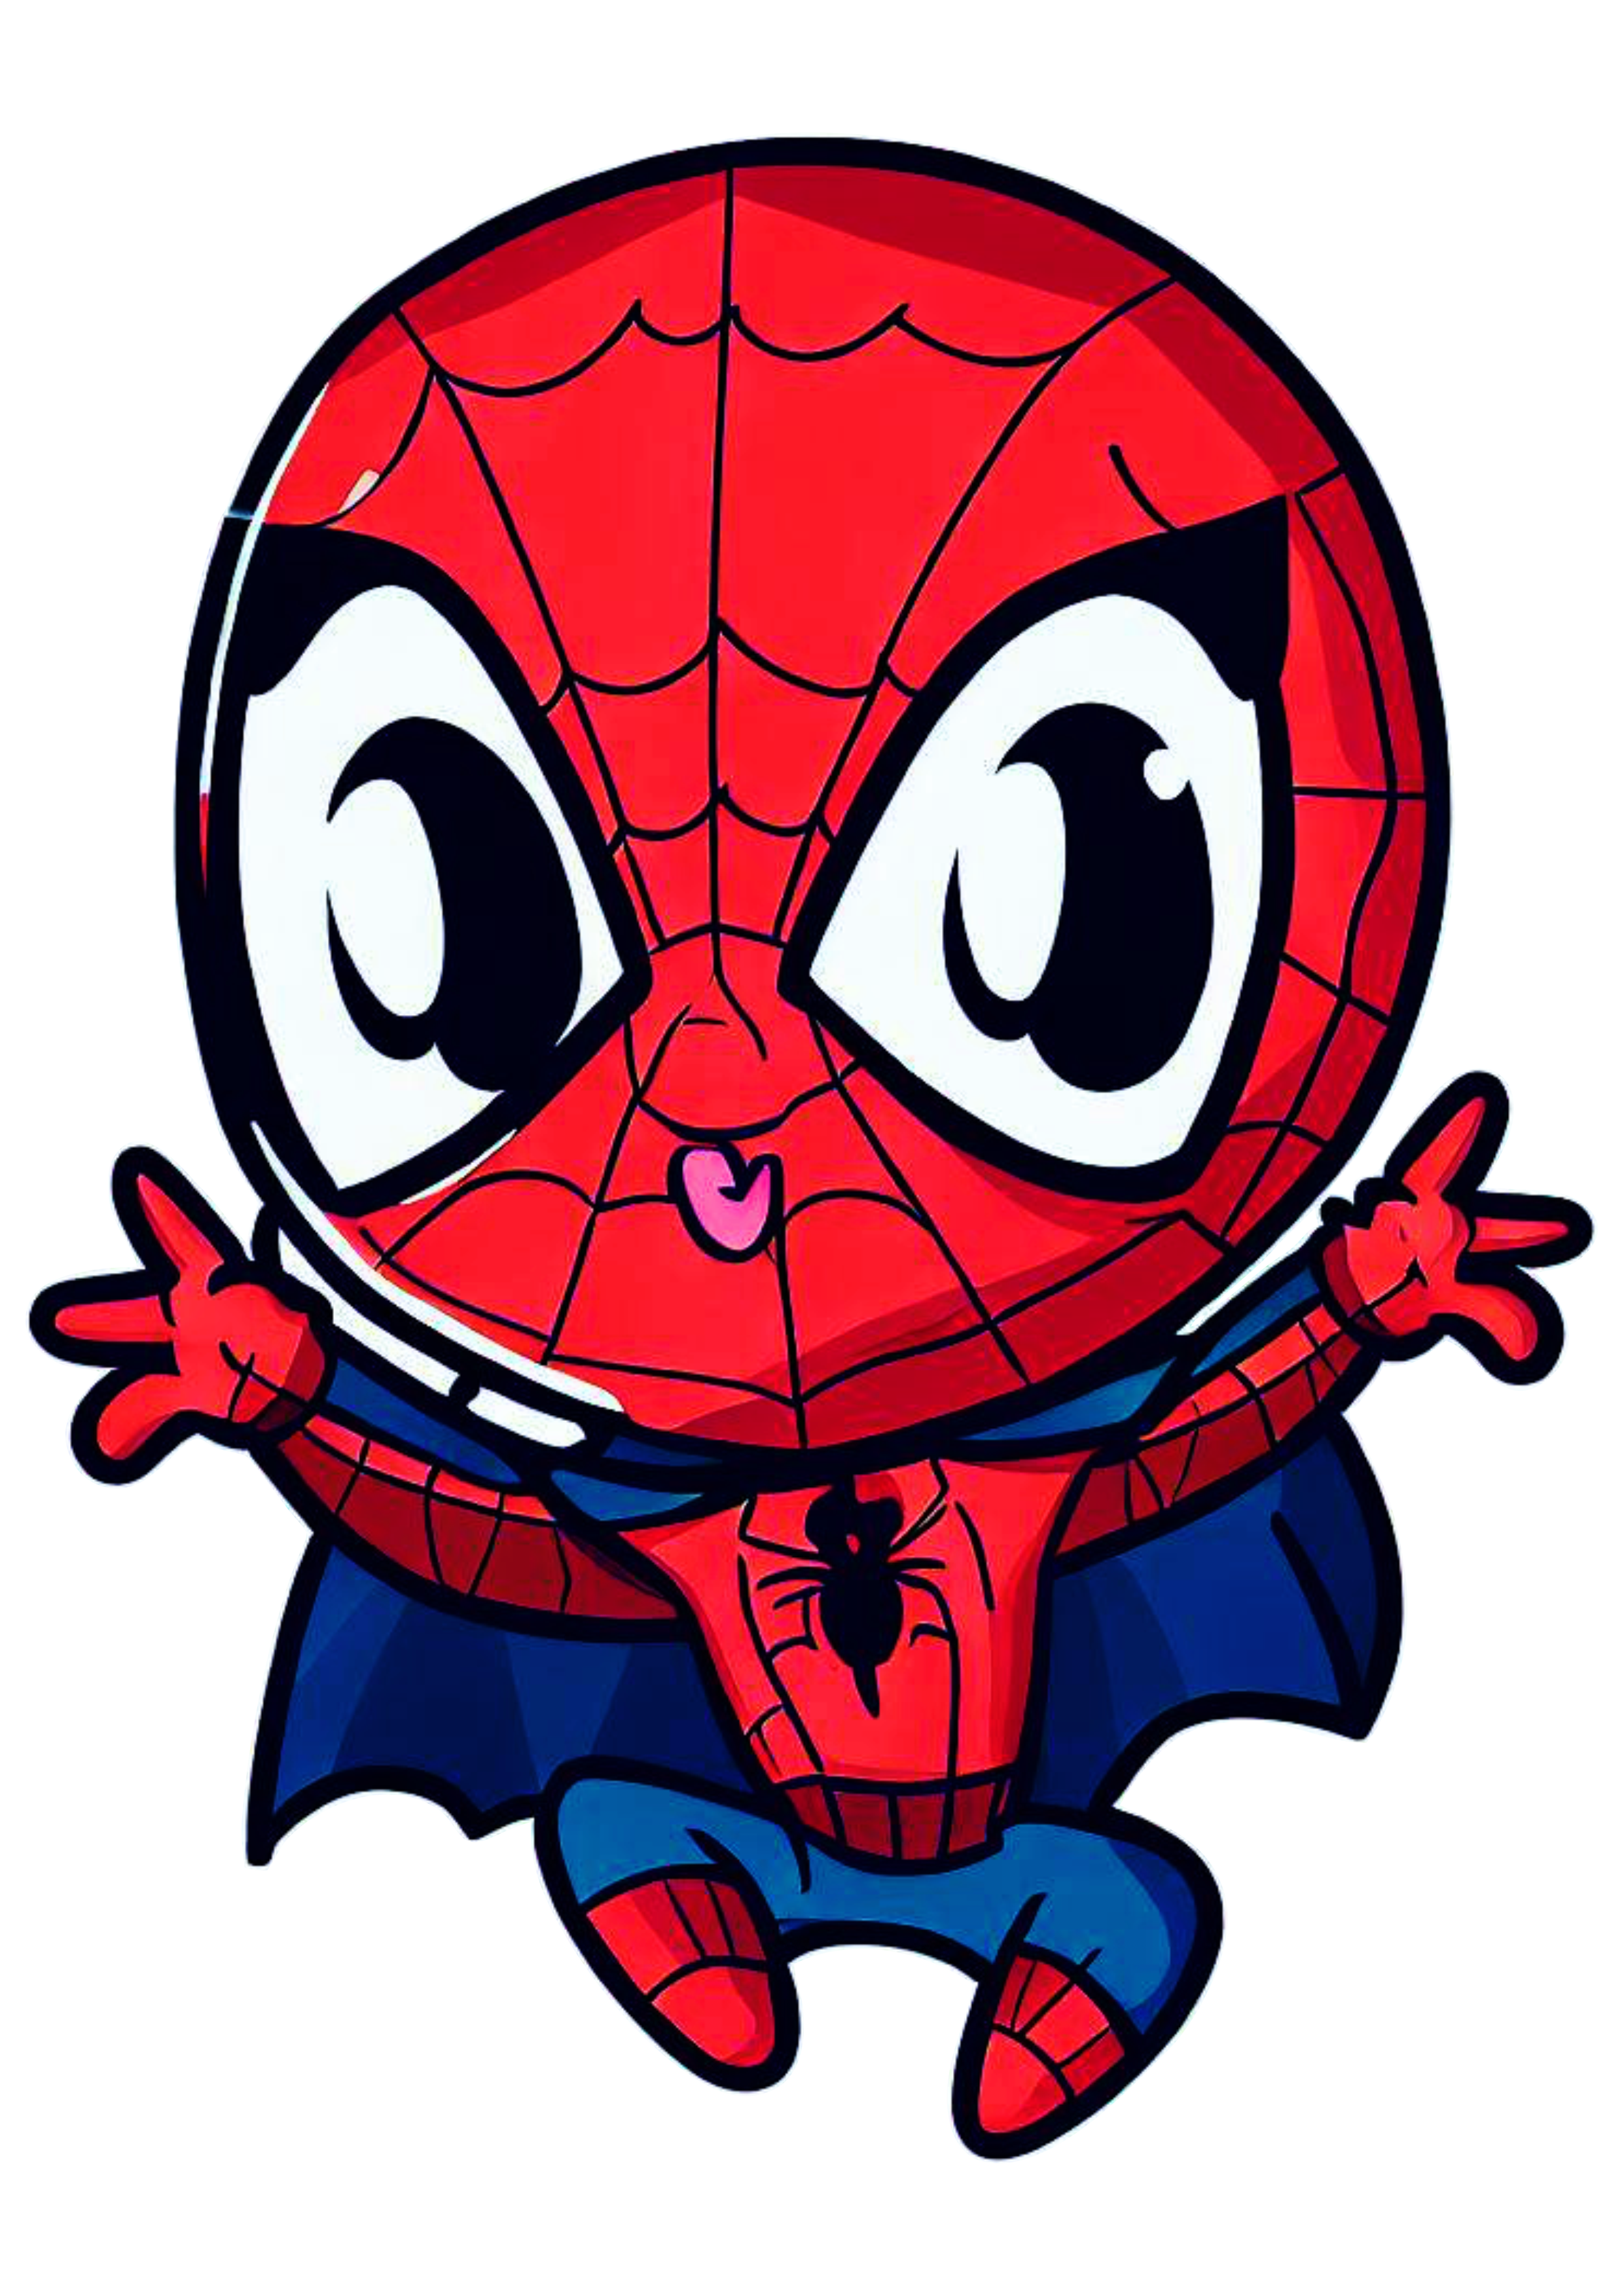 Homem aranha de capa cute spider man baby desenho infantil cartoon fantasia artes gráficas imagem sem fundo png